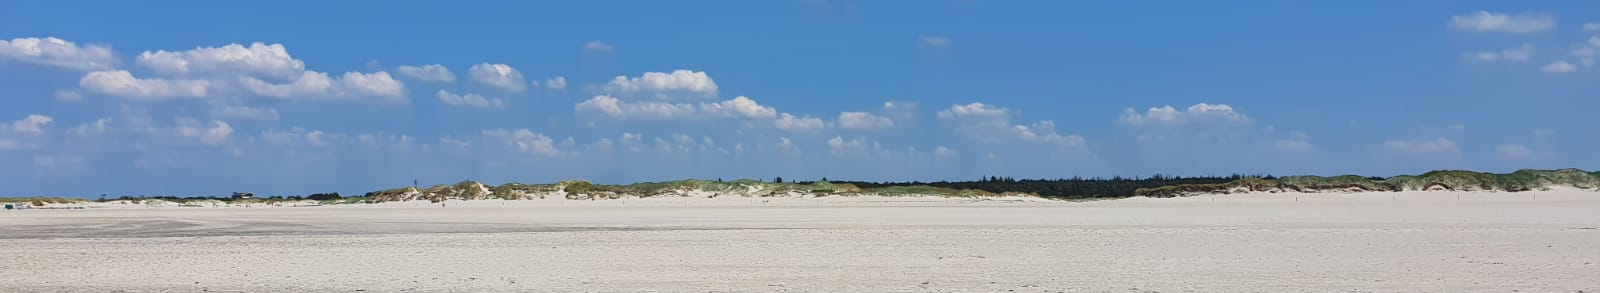 blog: photo von einem weißen strand bei sonnenschein